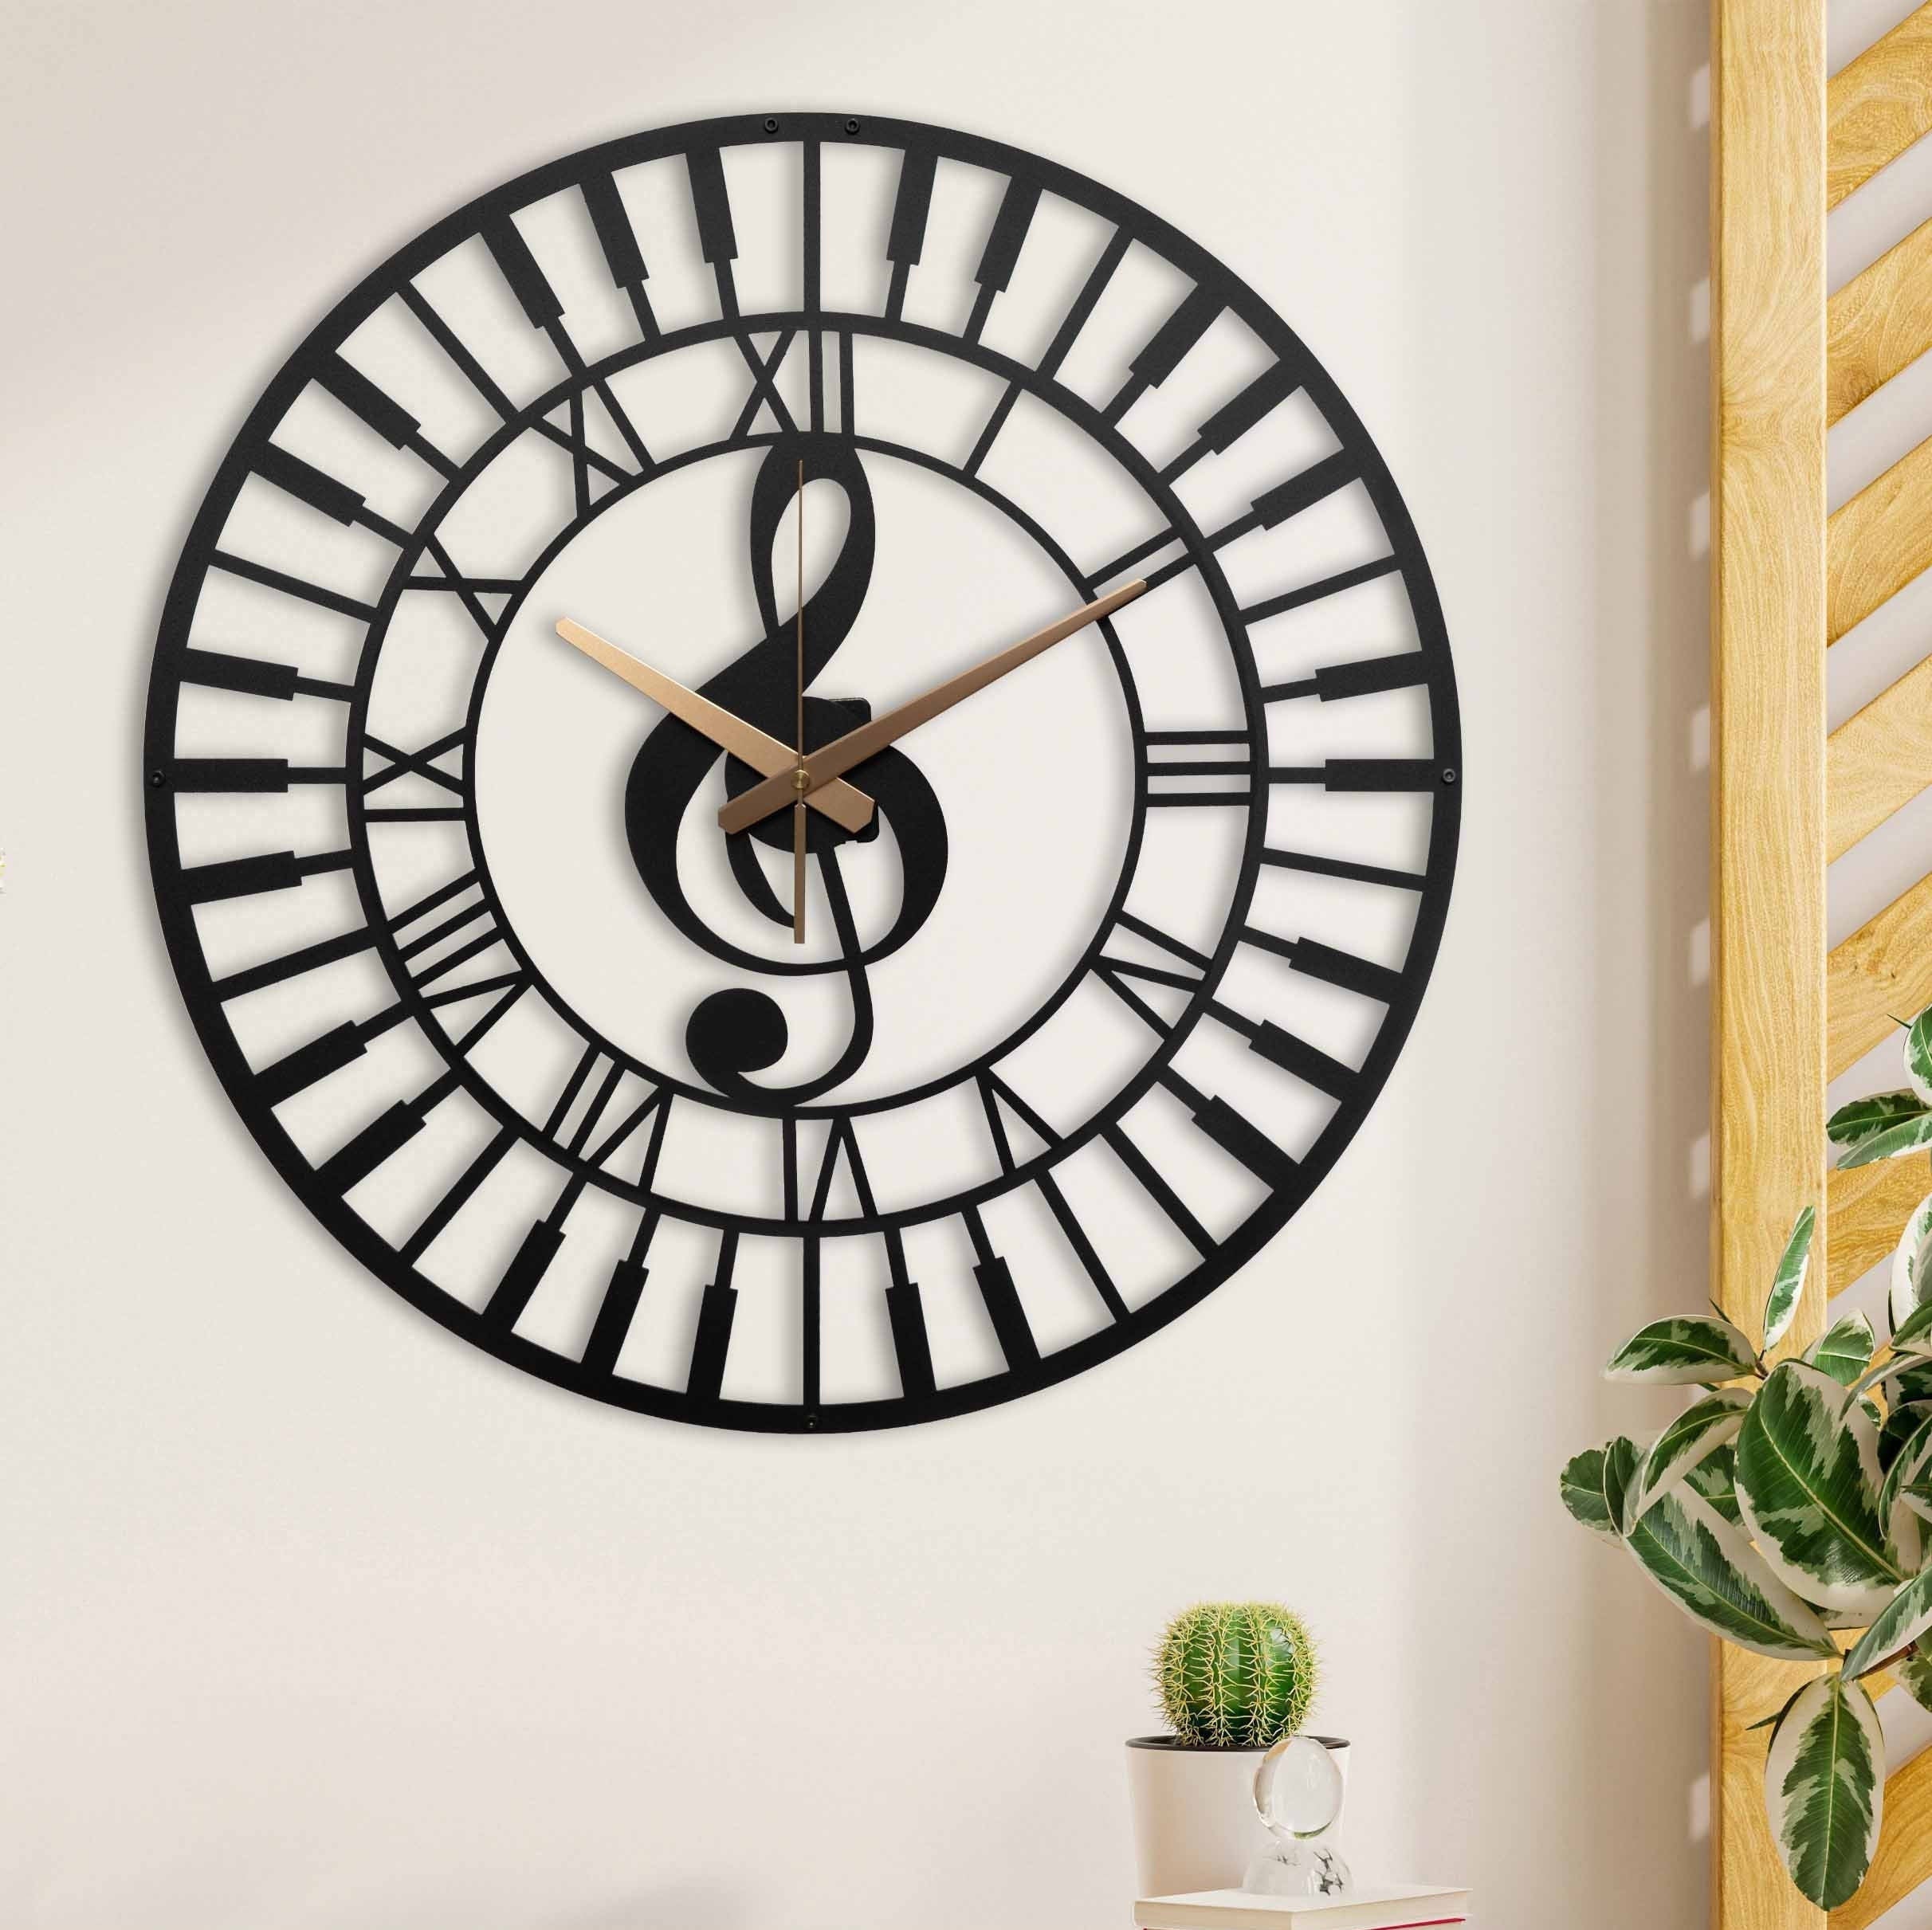 Wall Clock, Music Clock, Unique Wall Clock, Silent Wall Clock, Metal Wall Clock Living Room Wall Clock Roman Numerals Clock, Laser Cut Clock